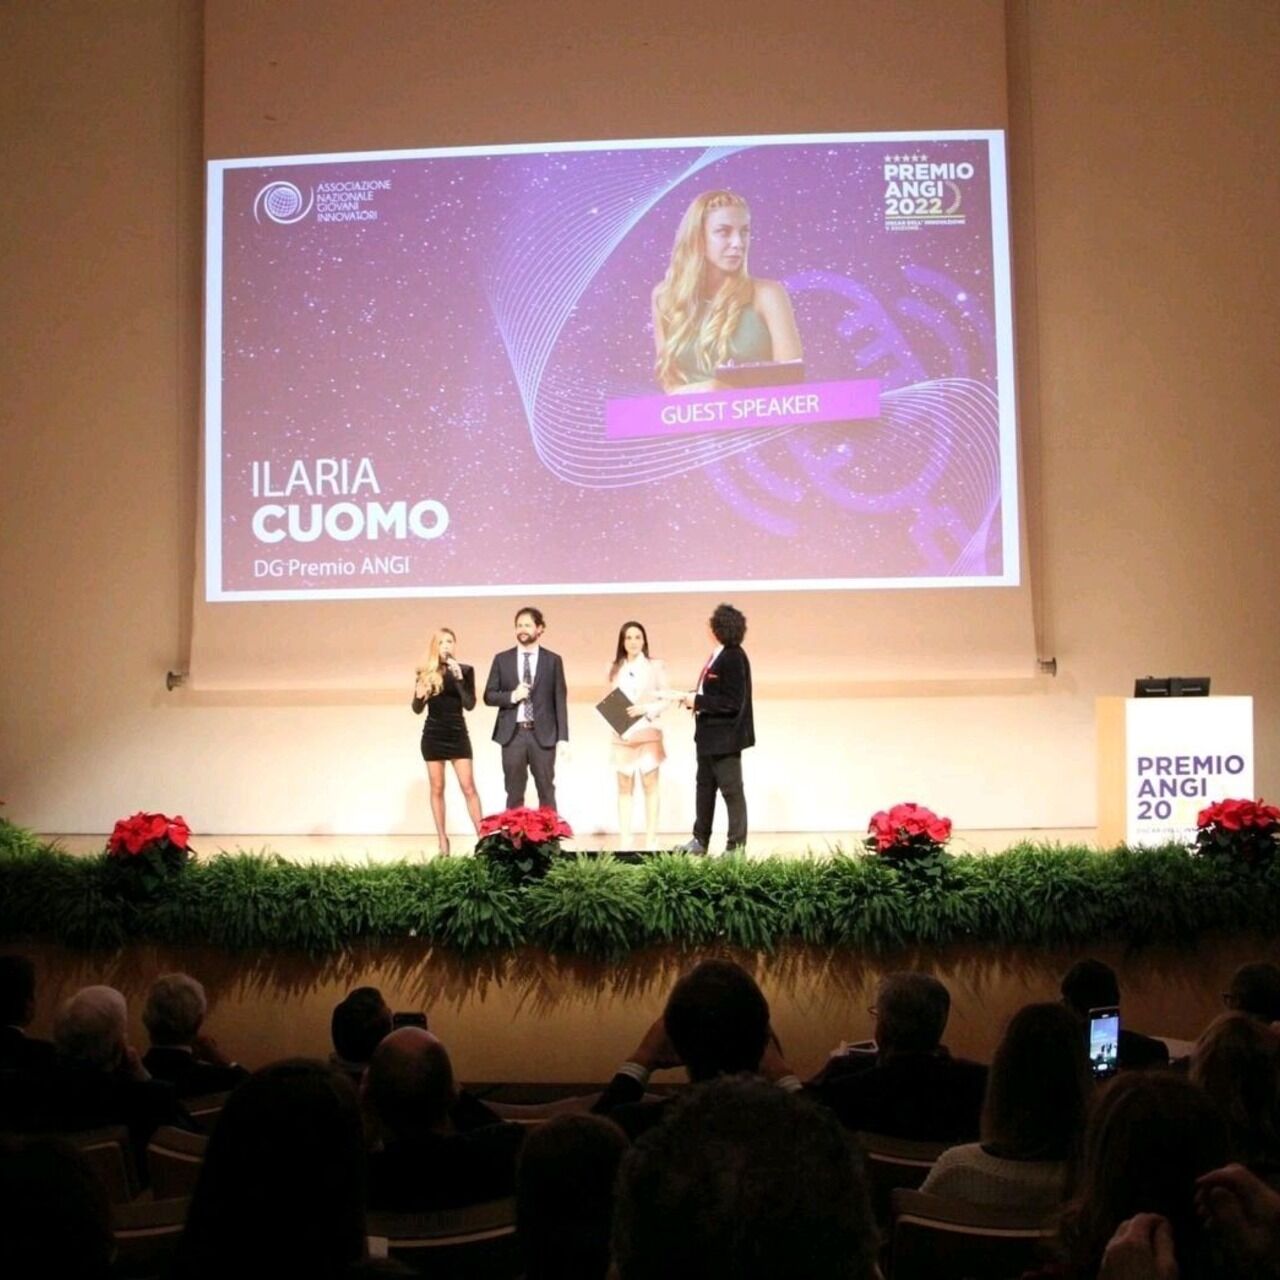 Oscar dell'Innovazione: l’introduzione di Ilaria Cuomo, Direttore Generale dell’iniziativa, alla consegna del “Premio ANGI - Oscar dell’Innovazione” 2022